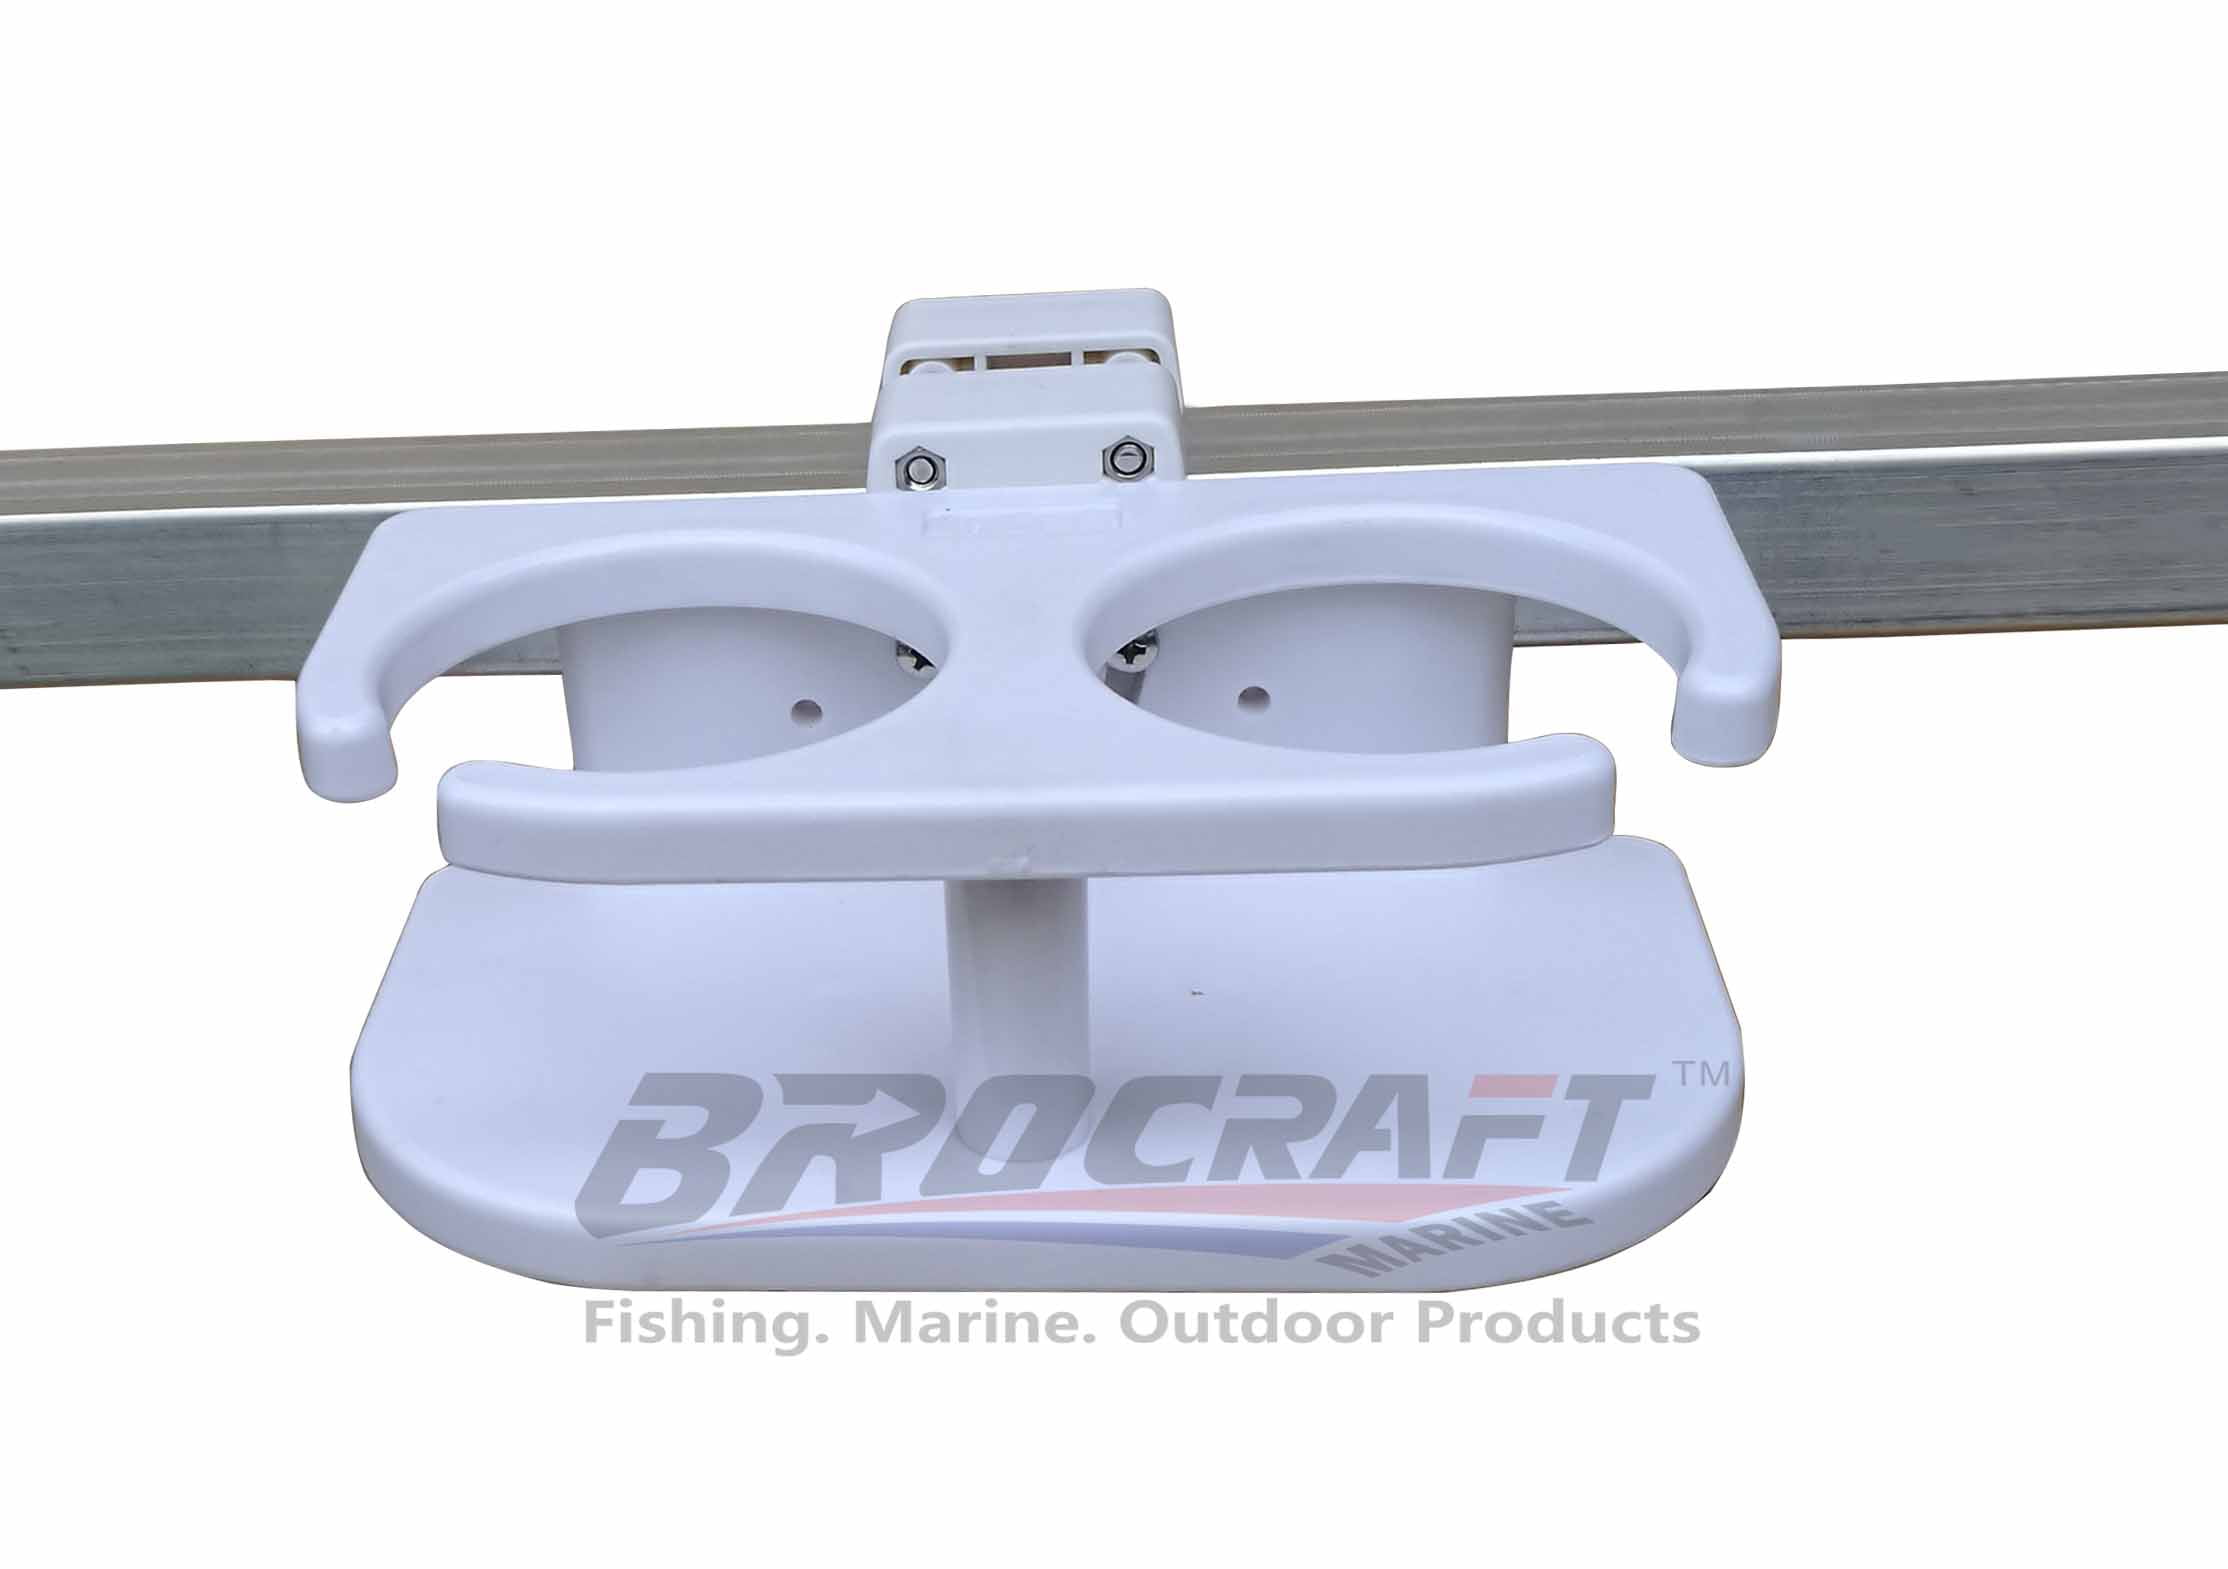  Brocraft Float Tube Drink Holder/Cup Holder for Float